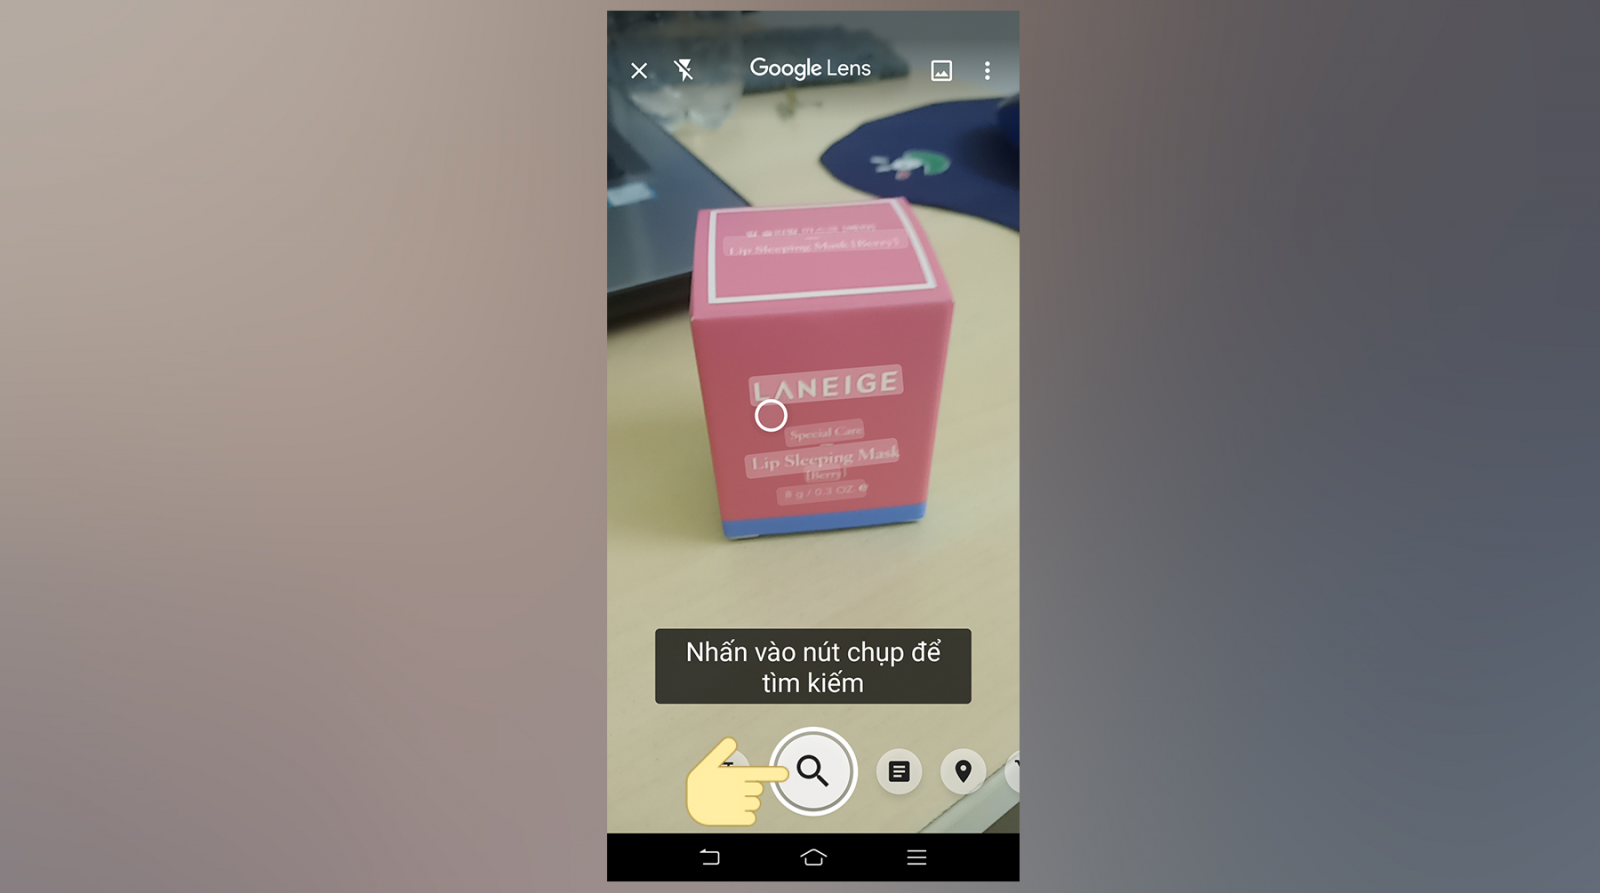 Google Ống Kính là một trong những dụng cụ khiến cho bạn thám thính kiếm vấn đề hình hình họa nhanh gọn lẹ bên trên điện thoại cảm ứng thông minh Android